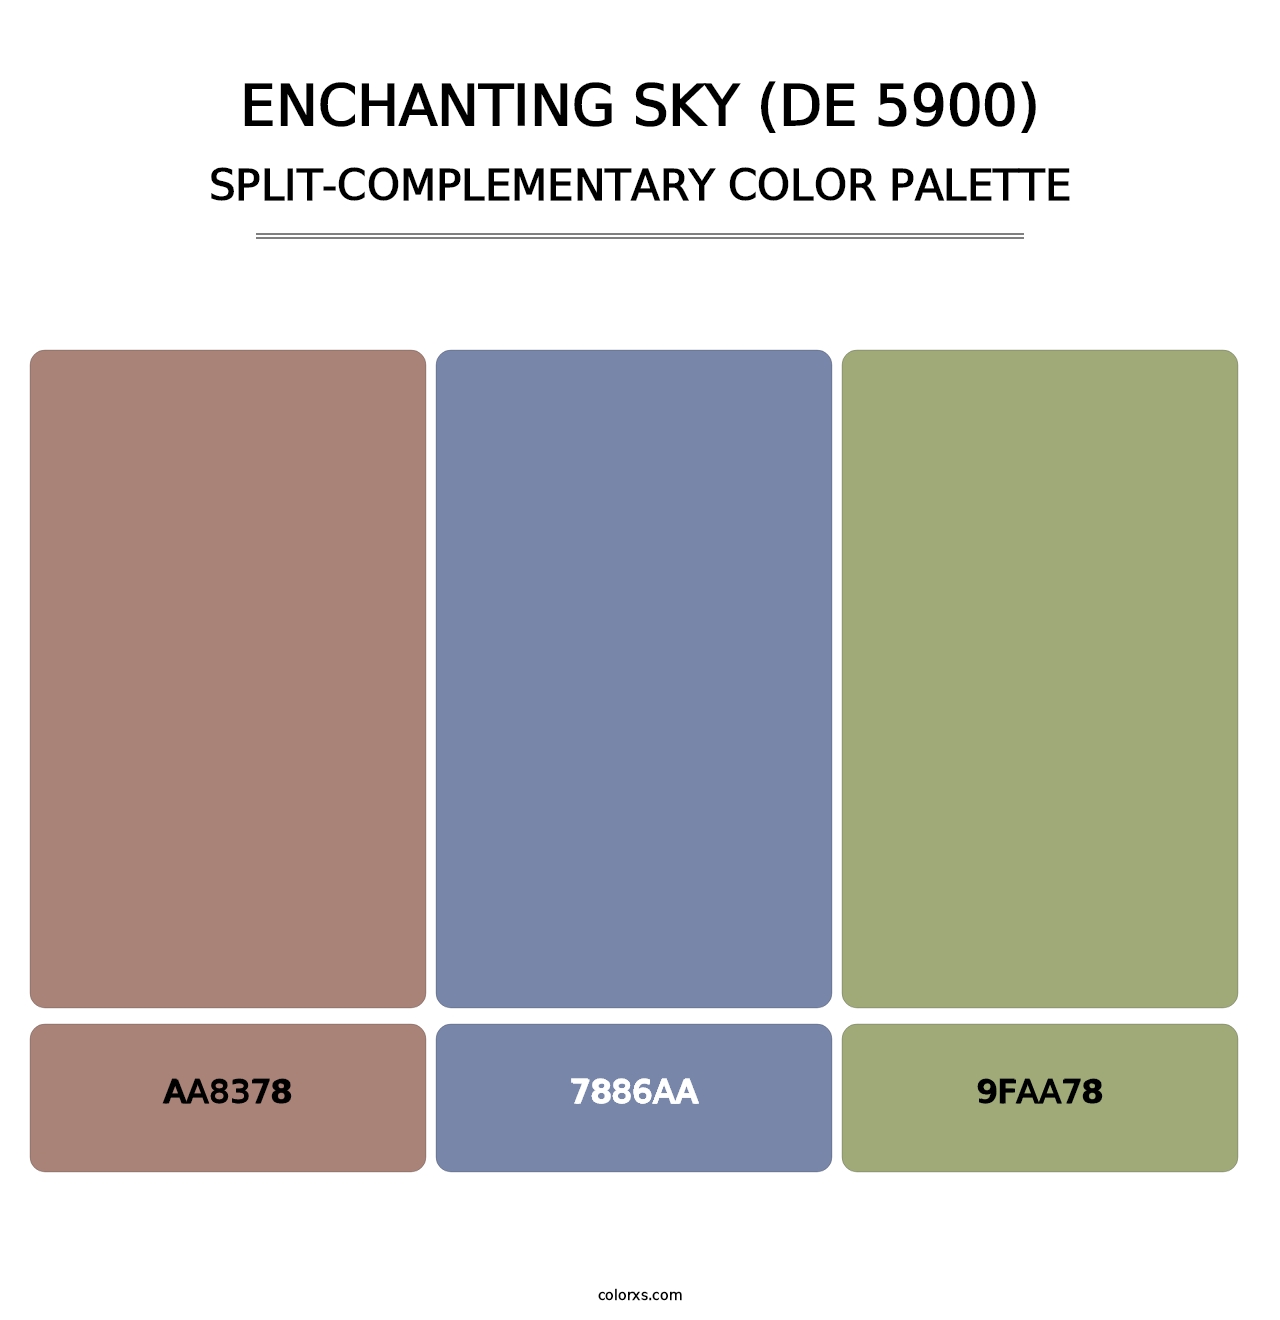 Enchanting Sky (DE 5900) - Split-Complementary Color Palette